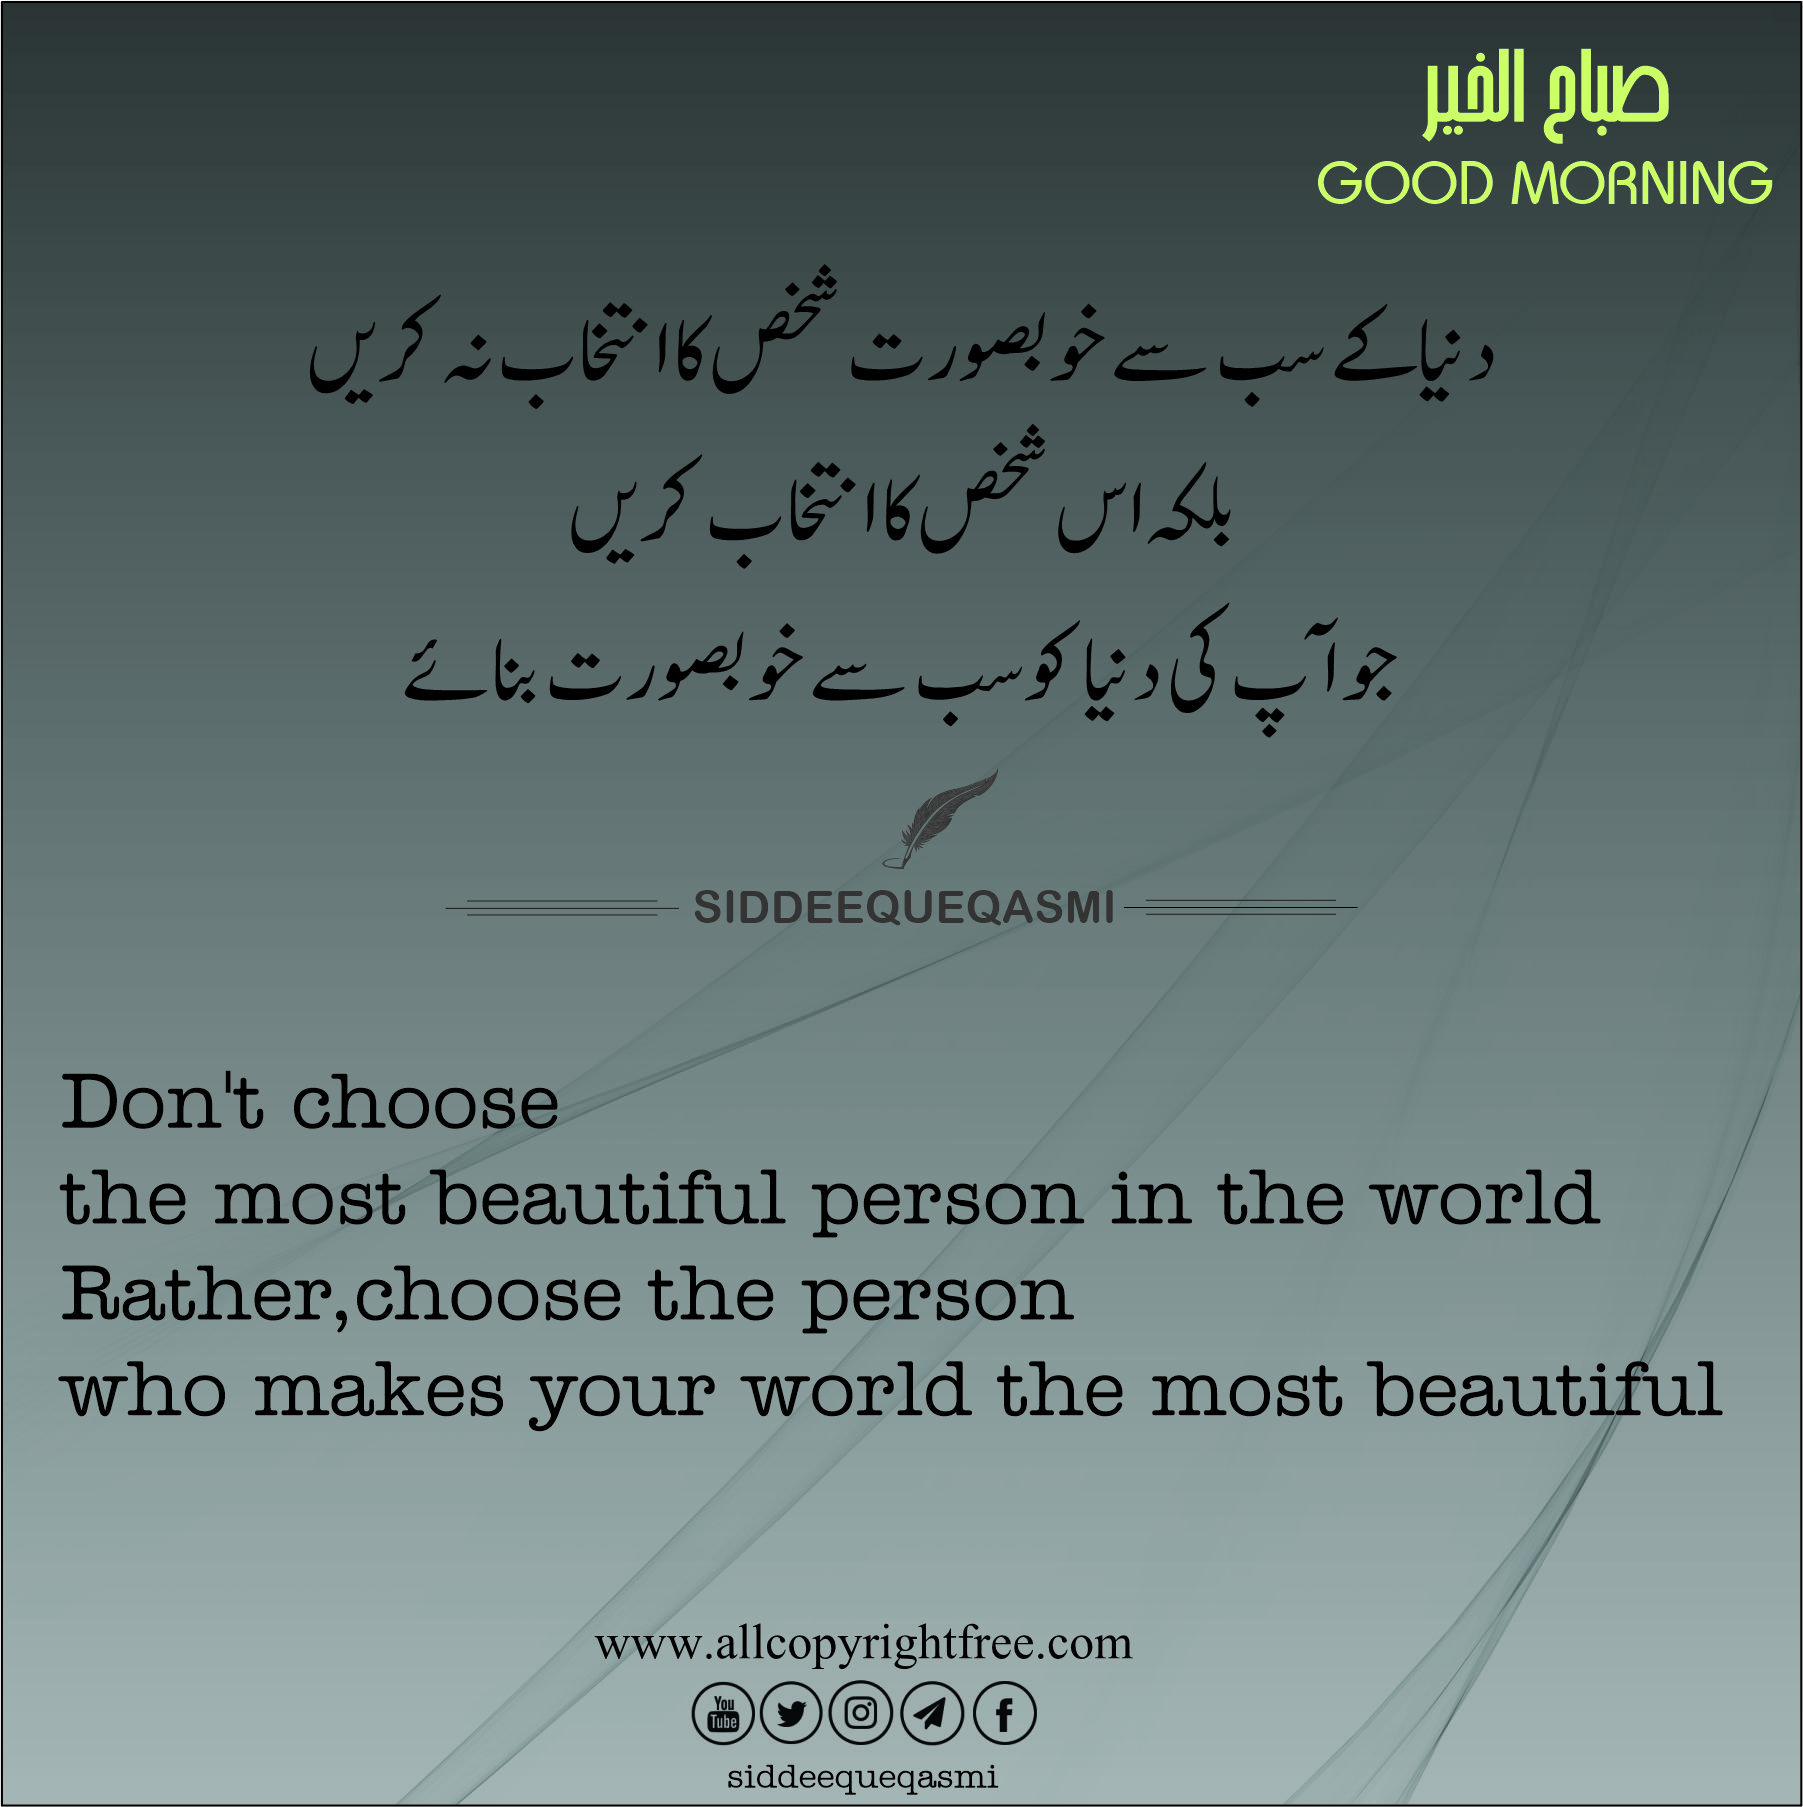 اس شخص کا انتخاب کریں جو آپ کی دنیا کوسب سے خوبصورت بنائے